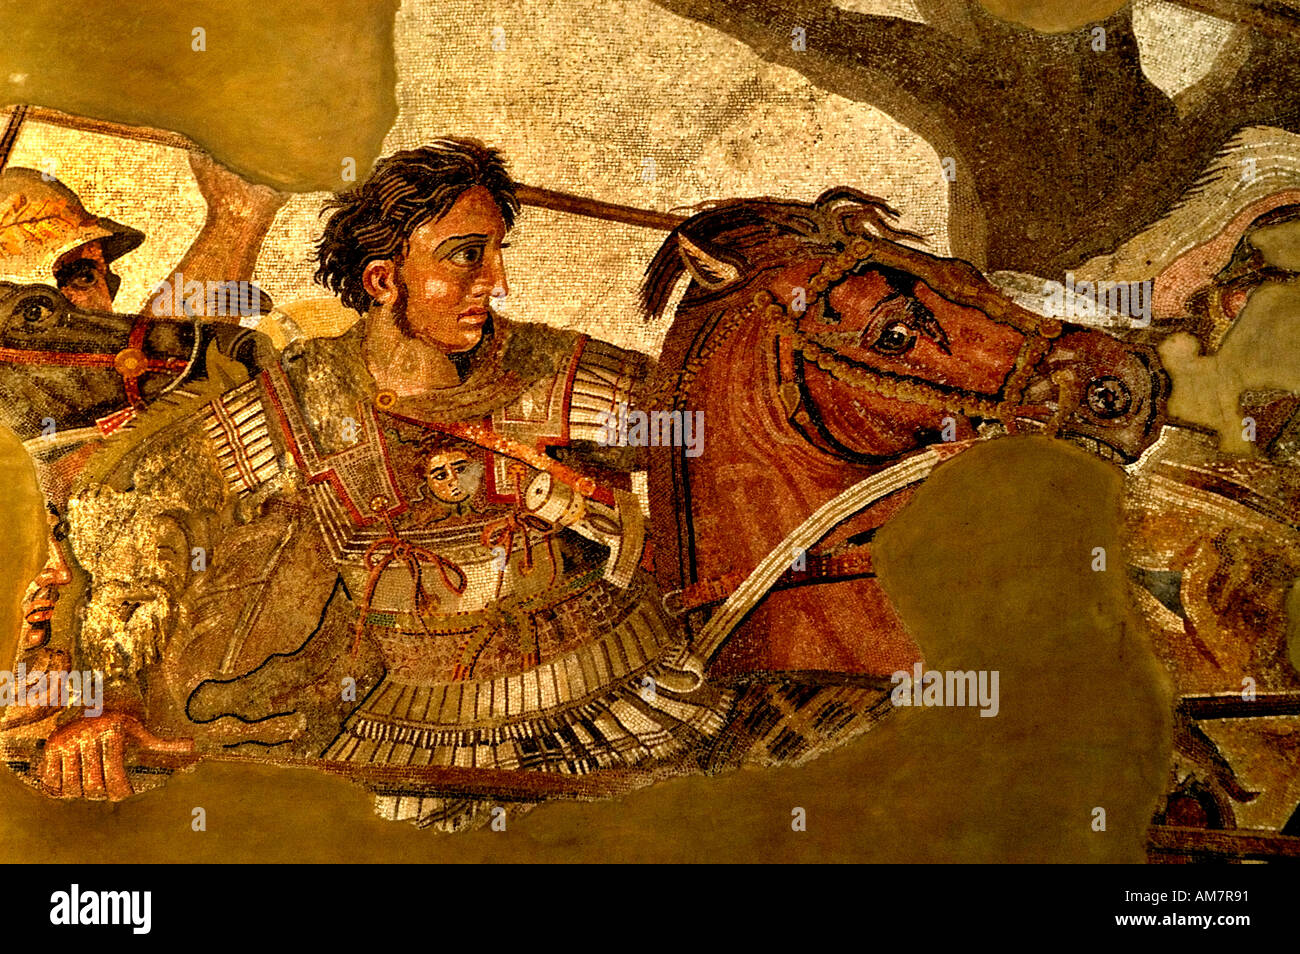 Dieses Bild ist Alexander der große in der Schlacht persische König Darius III Alexander der große Issos 331 B. C. Mosaic Pompeji 100 B Stockfoto